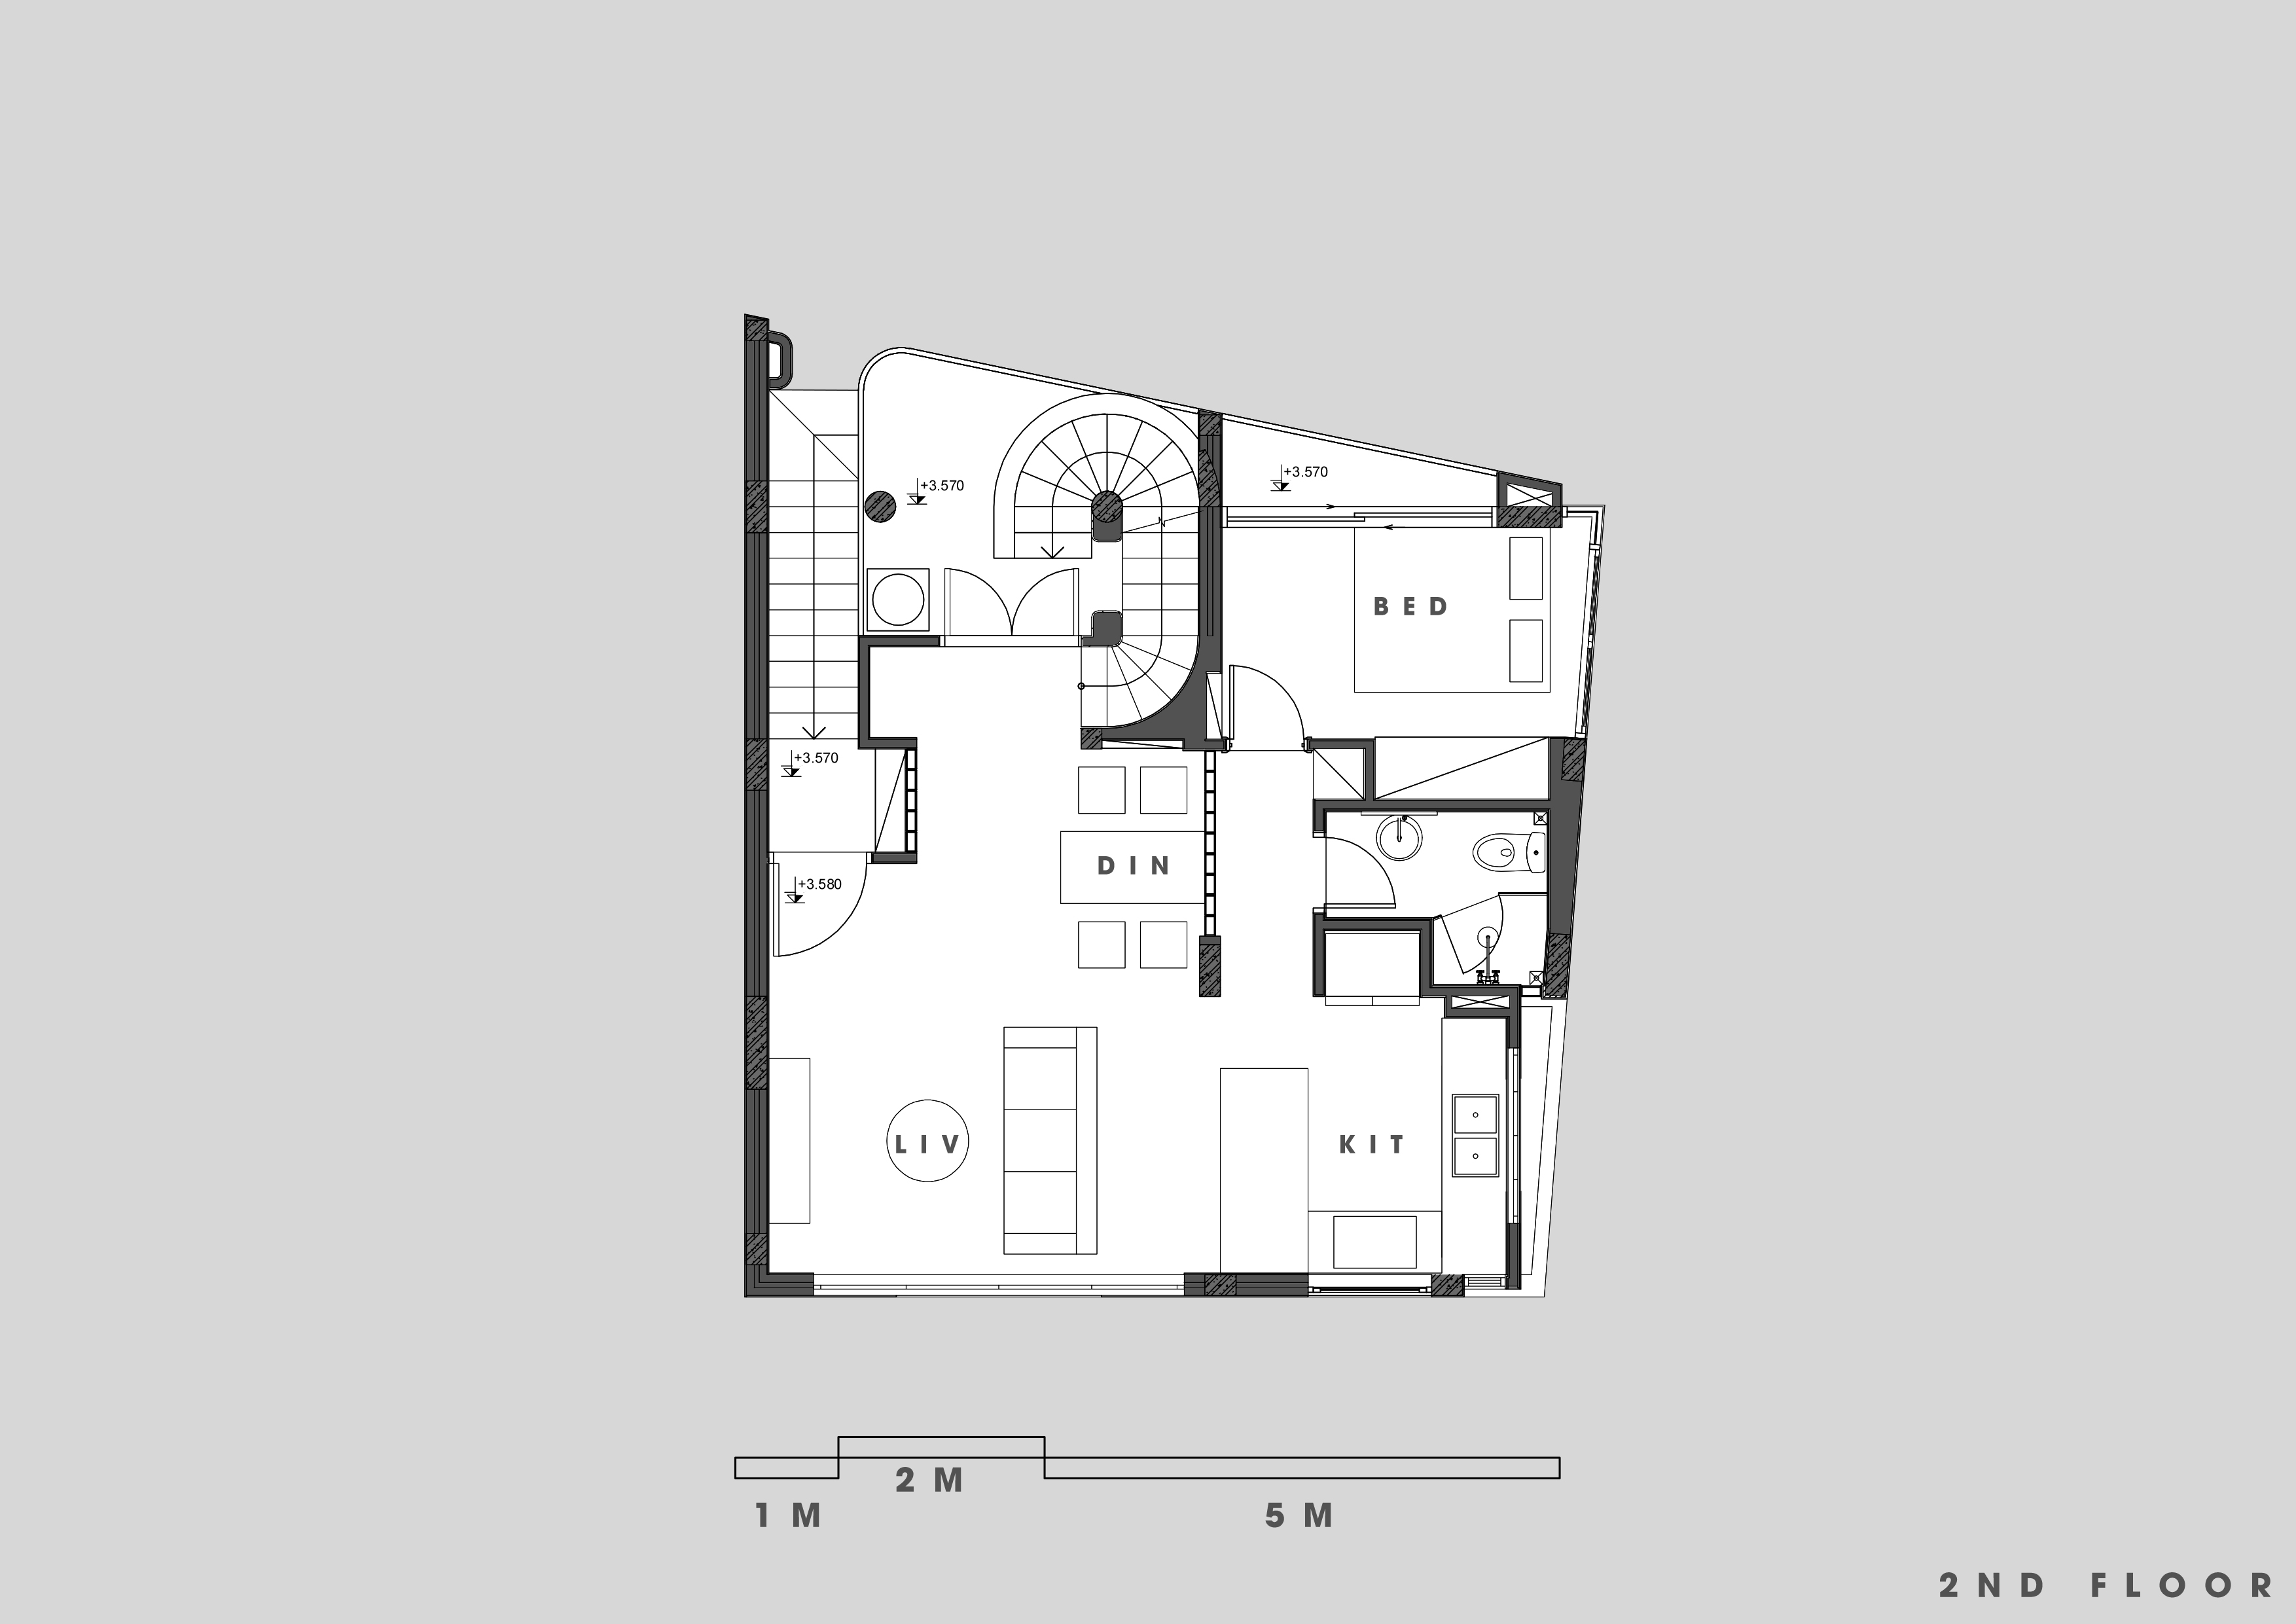 Second floor plan, source Hinzstudio